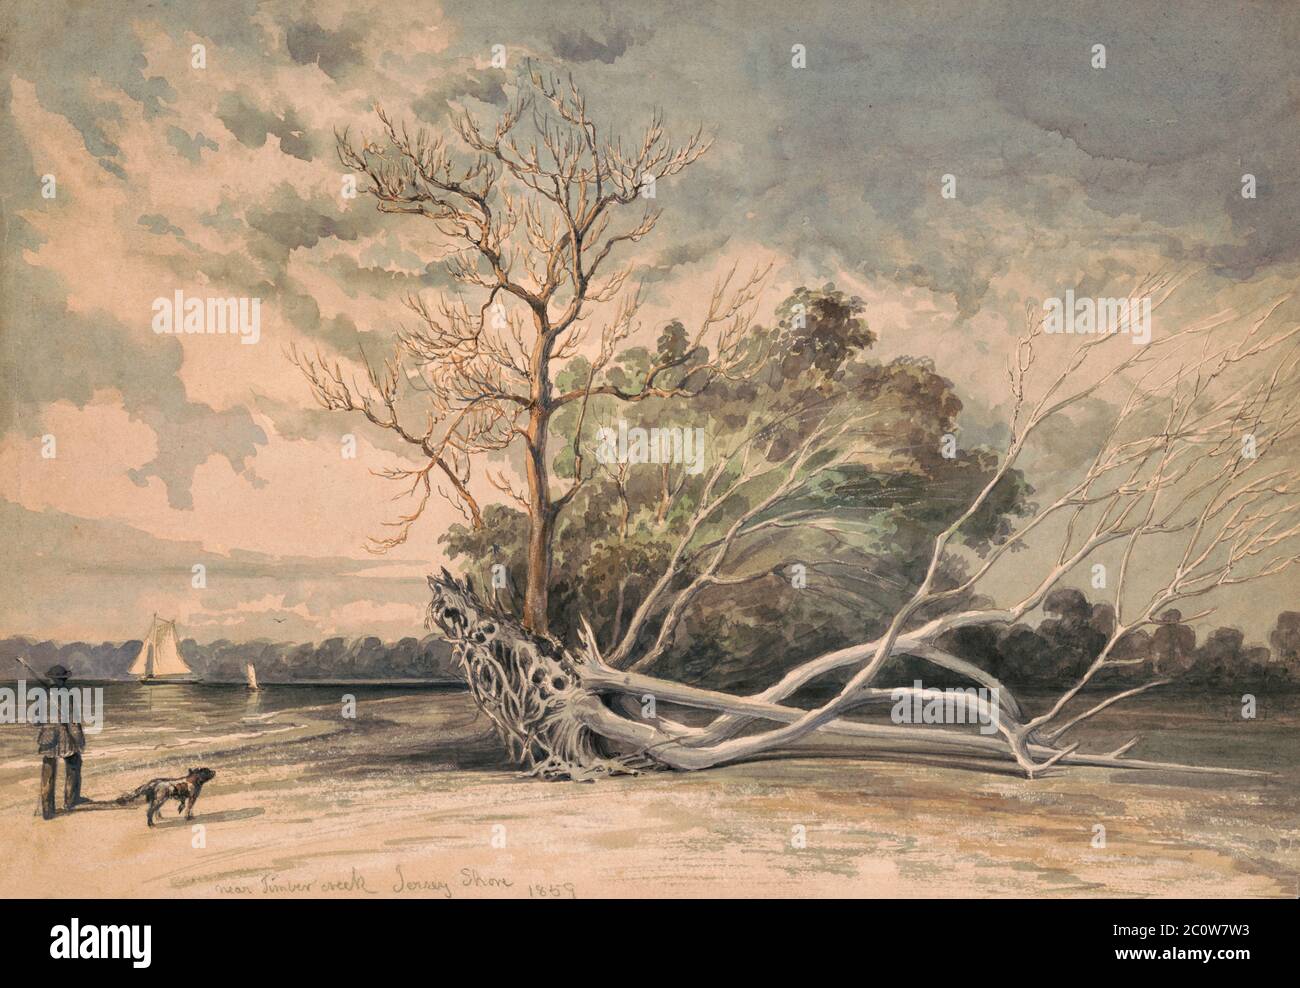 Cerca de Timber Creek, Jersey Shore 1859 - dibujo muestra, a la izquierda, un hombre con un rifle caminando a lo largo de la orilla de Timber Creek o el río Delaware con su perro. En el centro están los árboles muertos, uno caído, y dos veleros a la izquierda, en el fondo. Big Timber Creek entra en el río Delaware en el lado de Nueva Jersey justo al sur de Filadelfia. Foto de stock